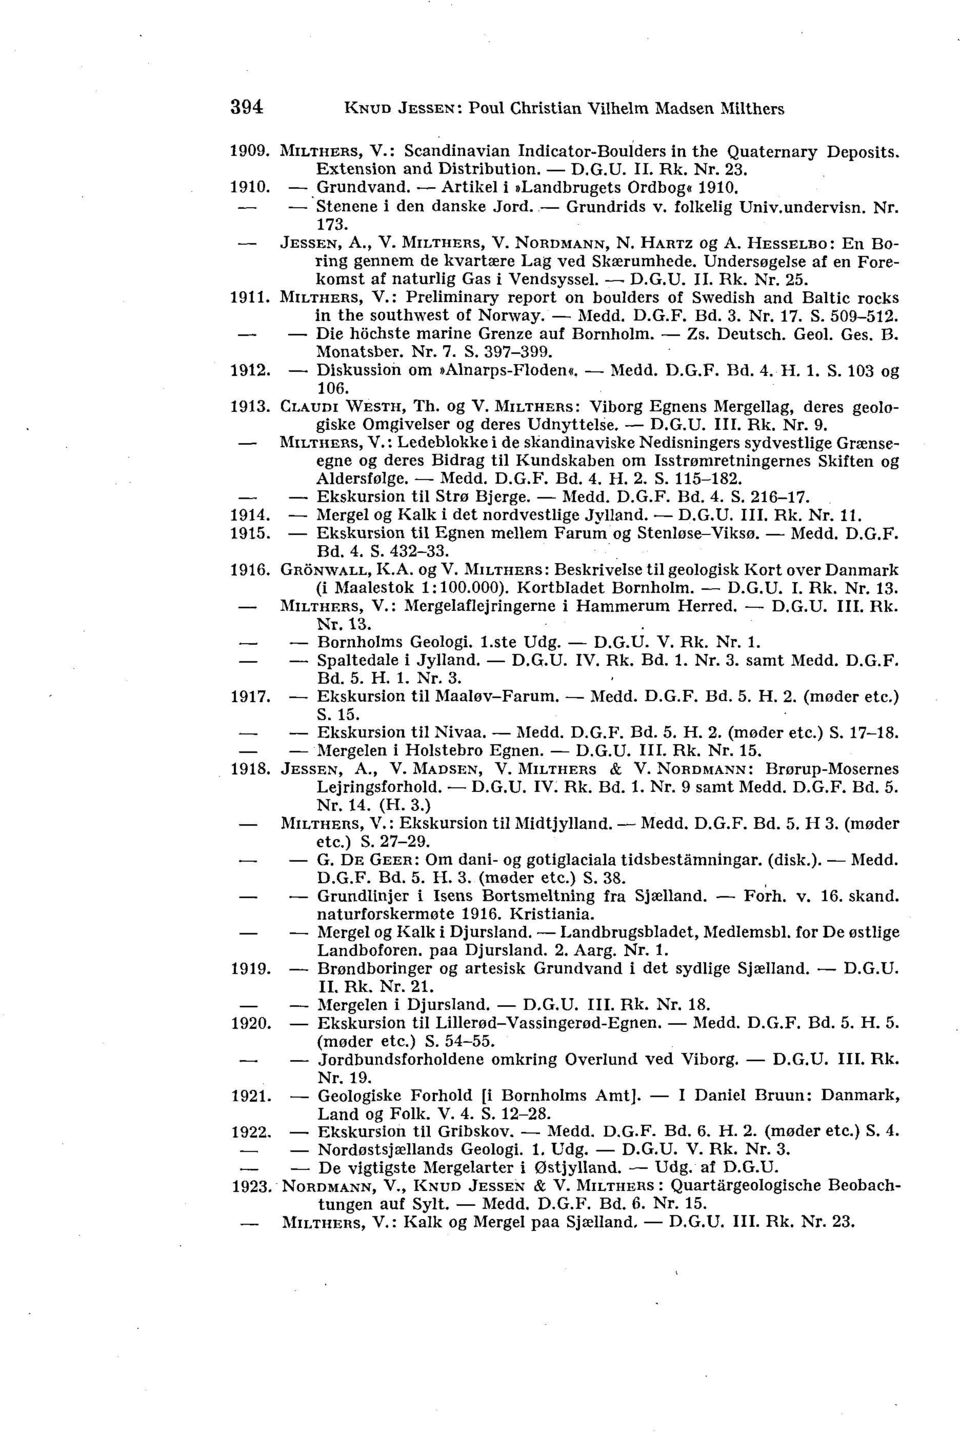 HESSELBO: En Boring gennem de kvartære Lag ved Skærumhede. Undersøgelse af en Forekomst af naturlig Gas i Vendsyssel. D.G.U. II. Rk. Nr. 25. 1911. MILTHERS, V.